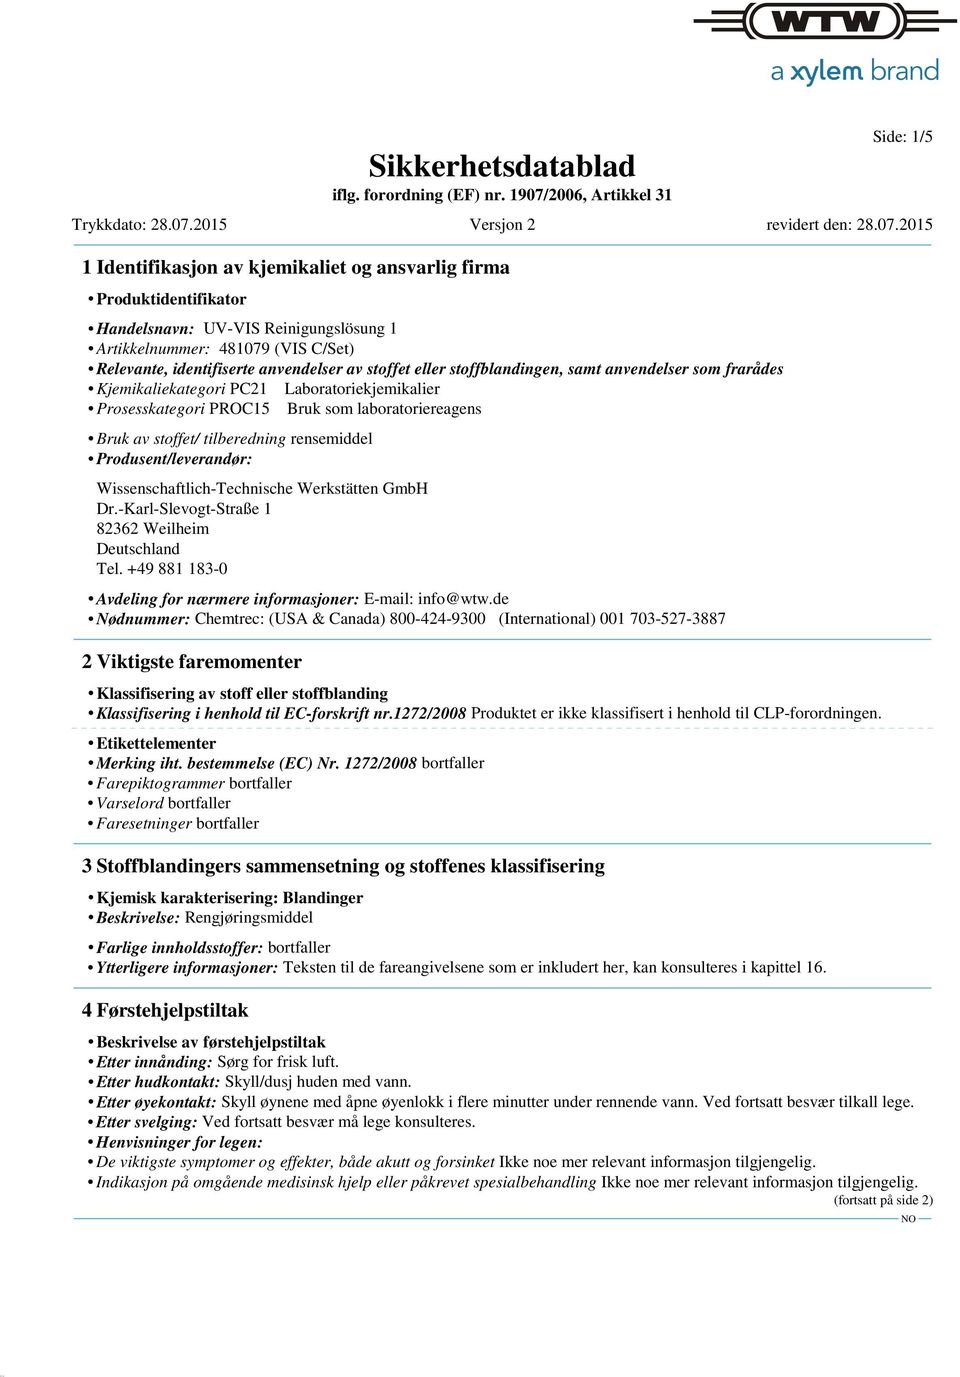 2015 1 Identifikasjon av kjemikaliet og ansvarlig firma Produktidentifikator Handelsnavn: UV-VIS Reinigungslösung 1 Artikkelnummer: 481079 (VIS C/Set) Relevante, identifiserte anvendelser av stoffet